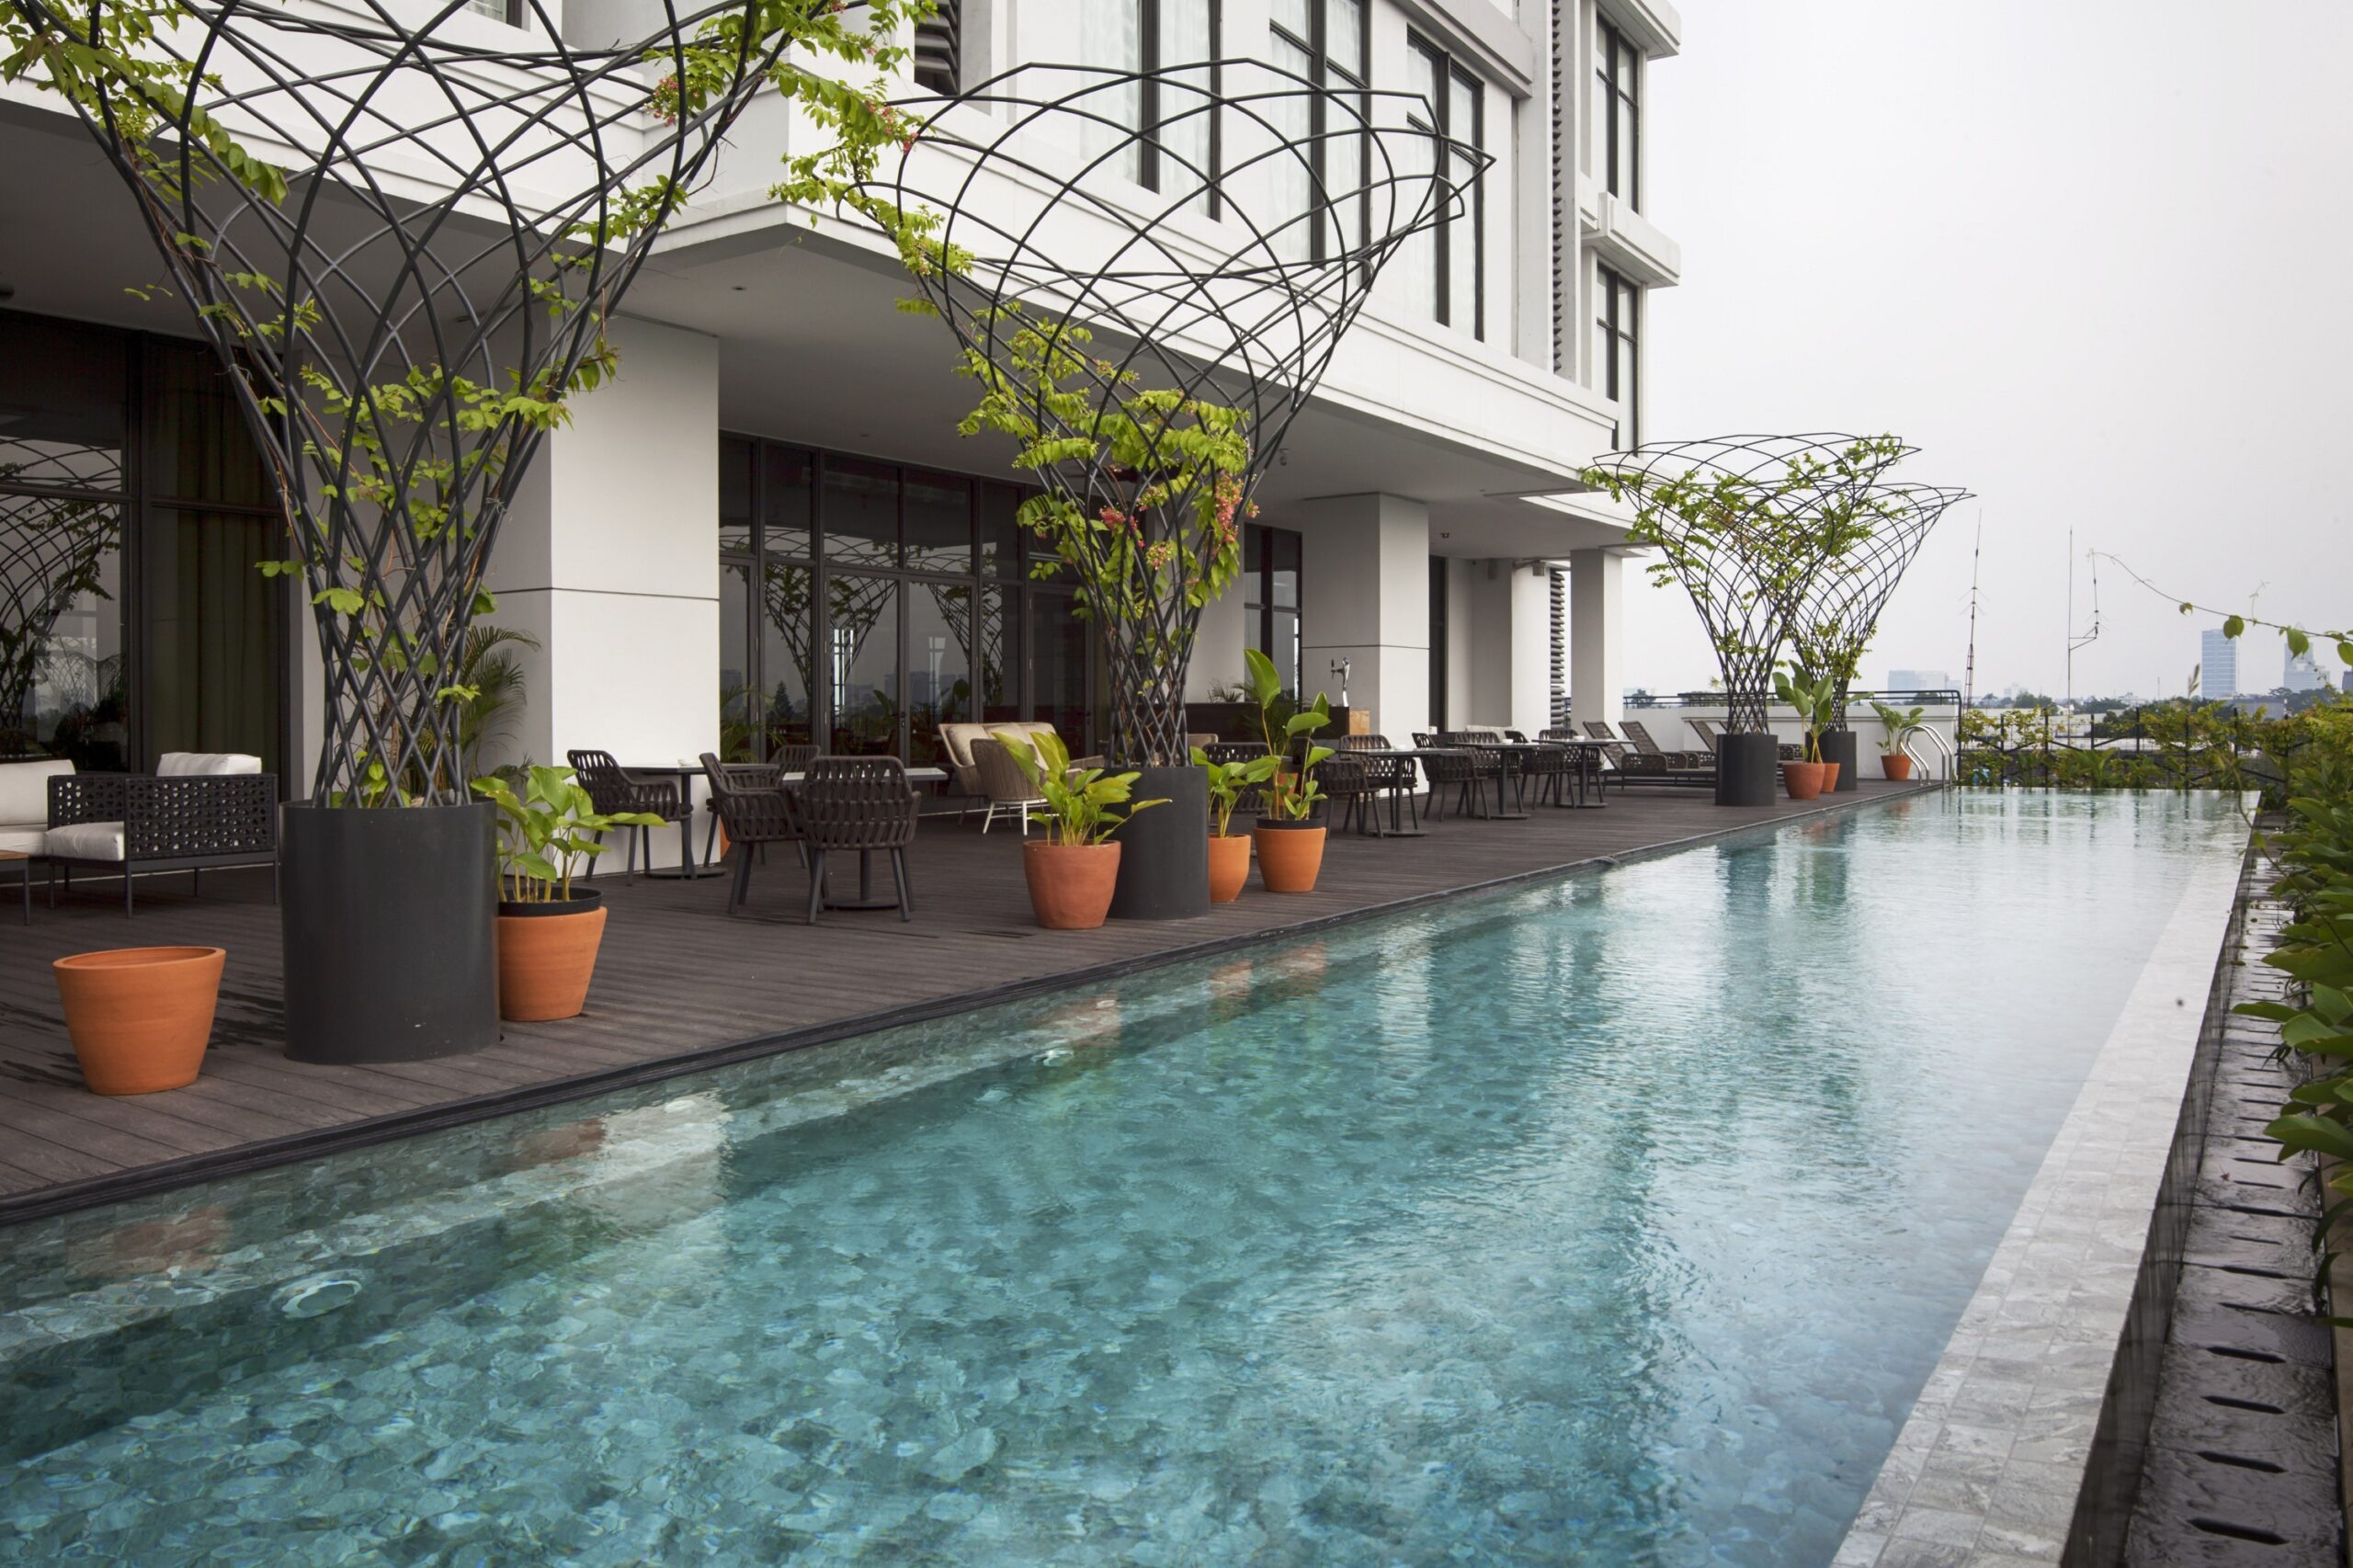 5 Rekomendasi Hotel di Jakarta Selatan